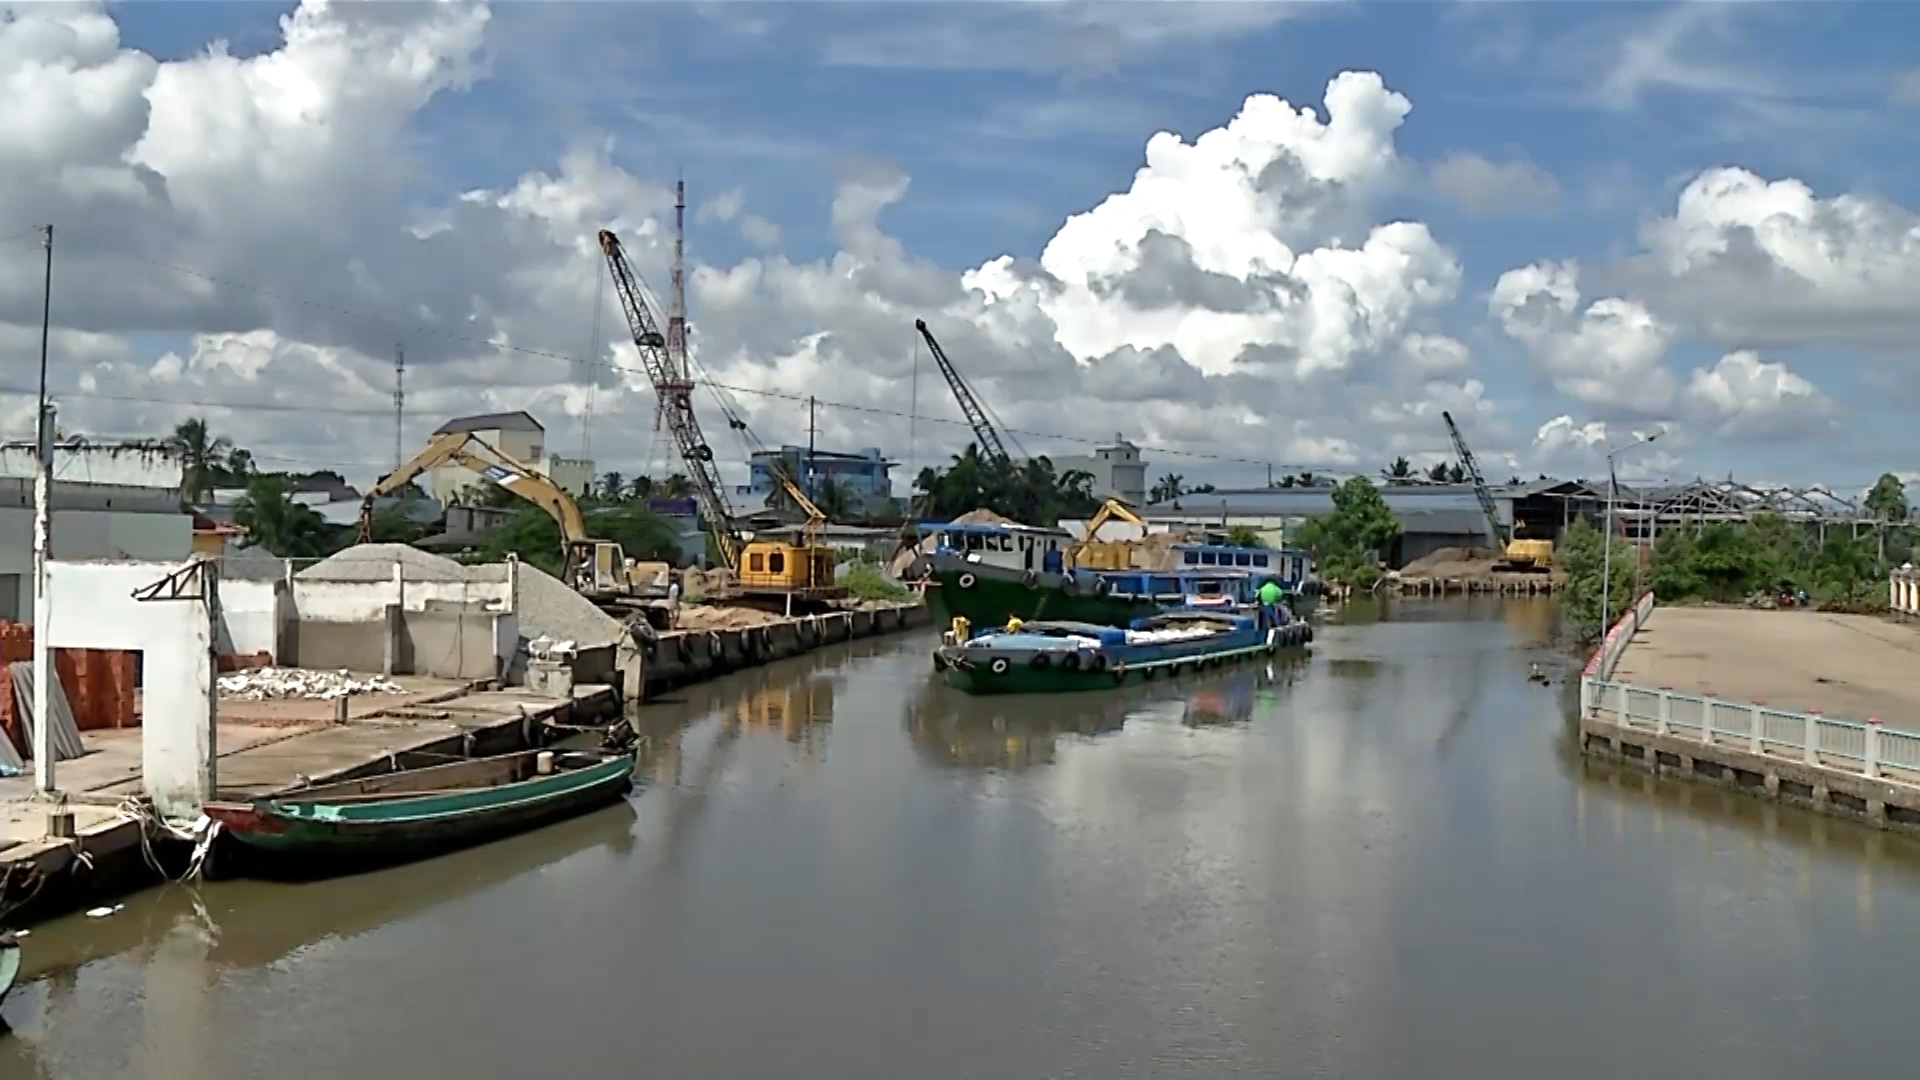 Vụ doanh nghiệp ngang nhiên lấn chiếm lòng sông ở Cà Mau: Xây kè bê tông lấn sông trước khi được cấp phép hoạt động - Ảnh 2.